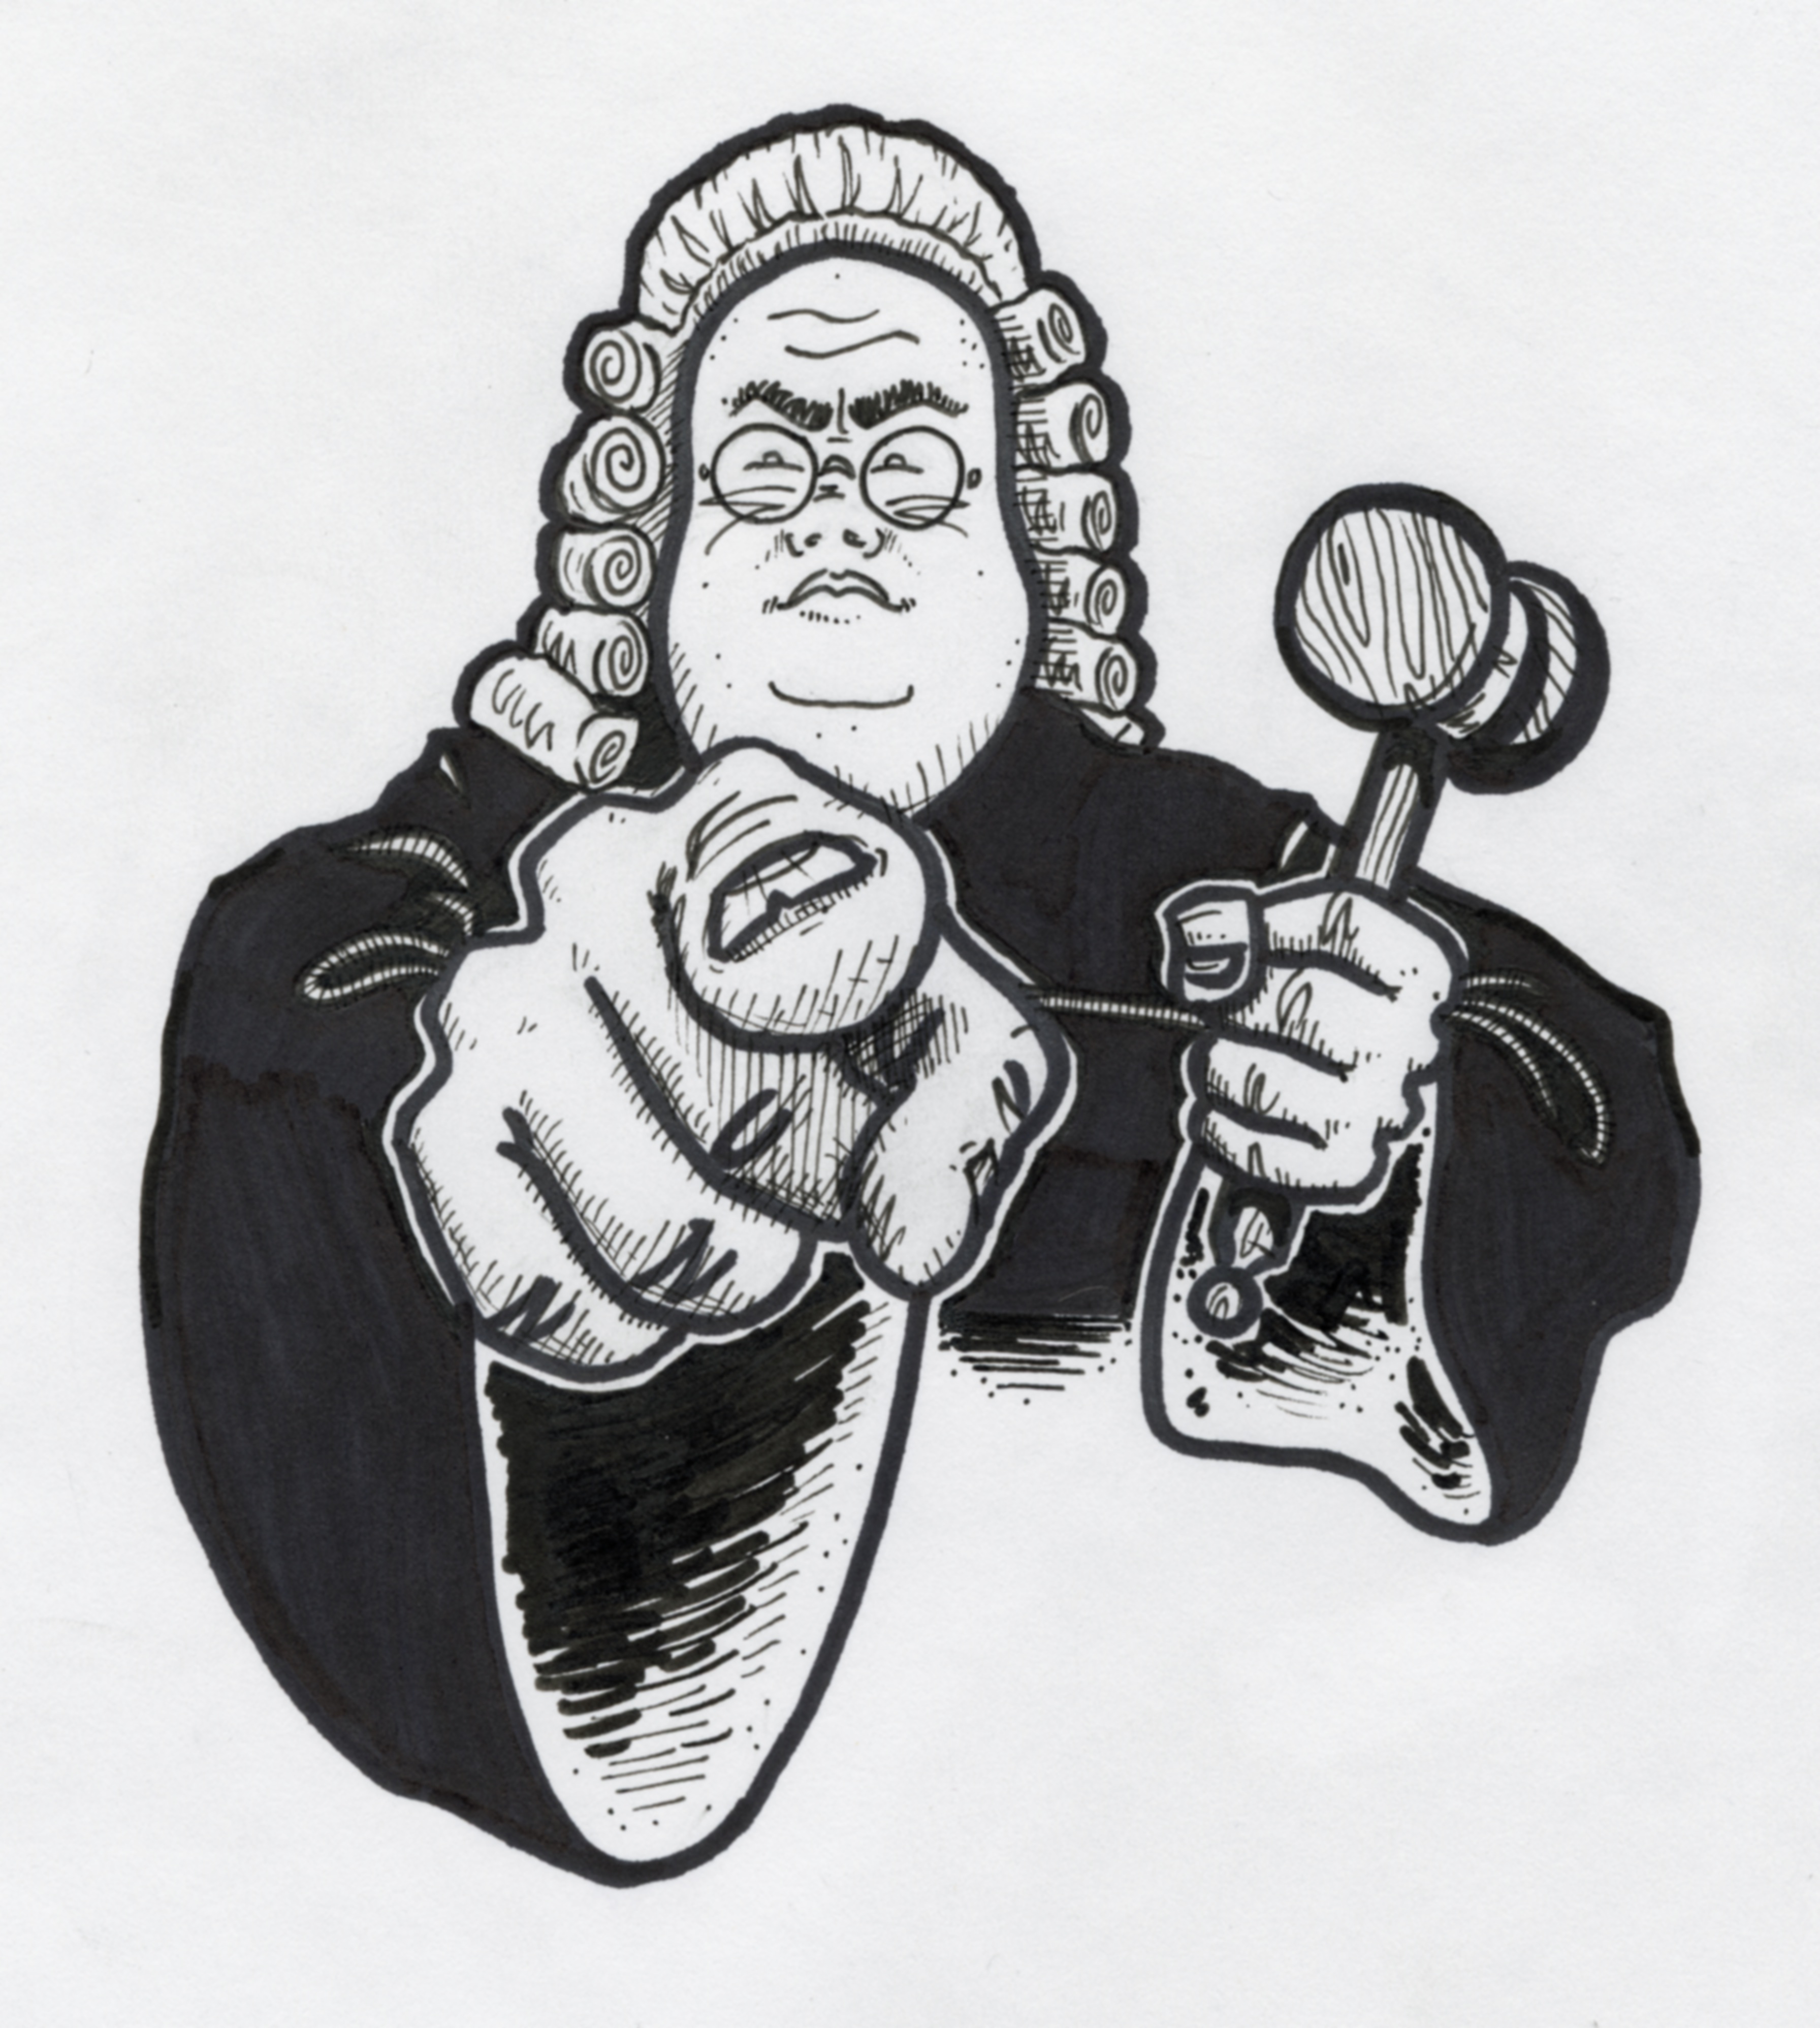 Judge Sketch at Explore collection of Judge Sketch